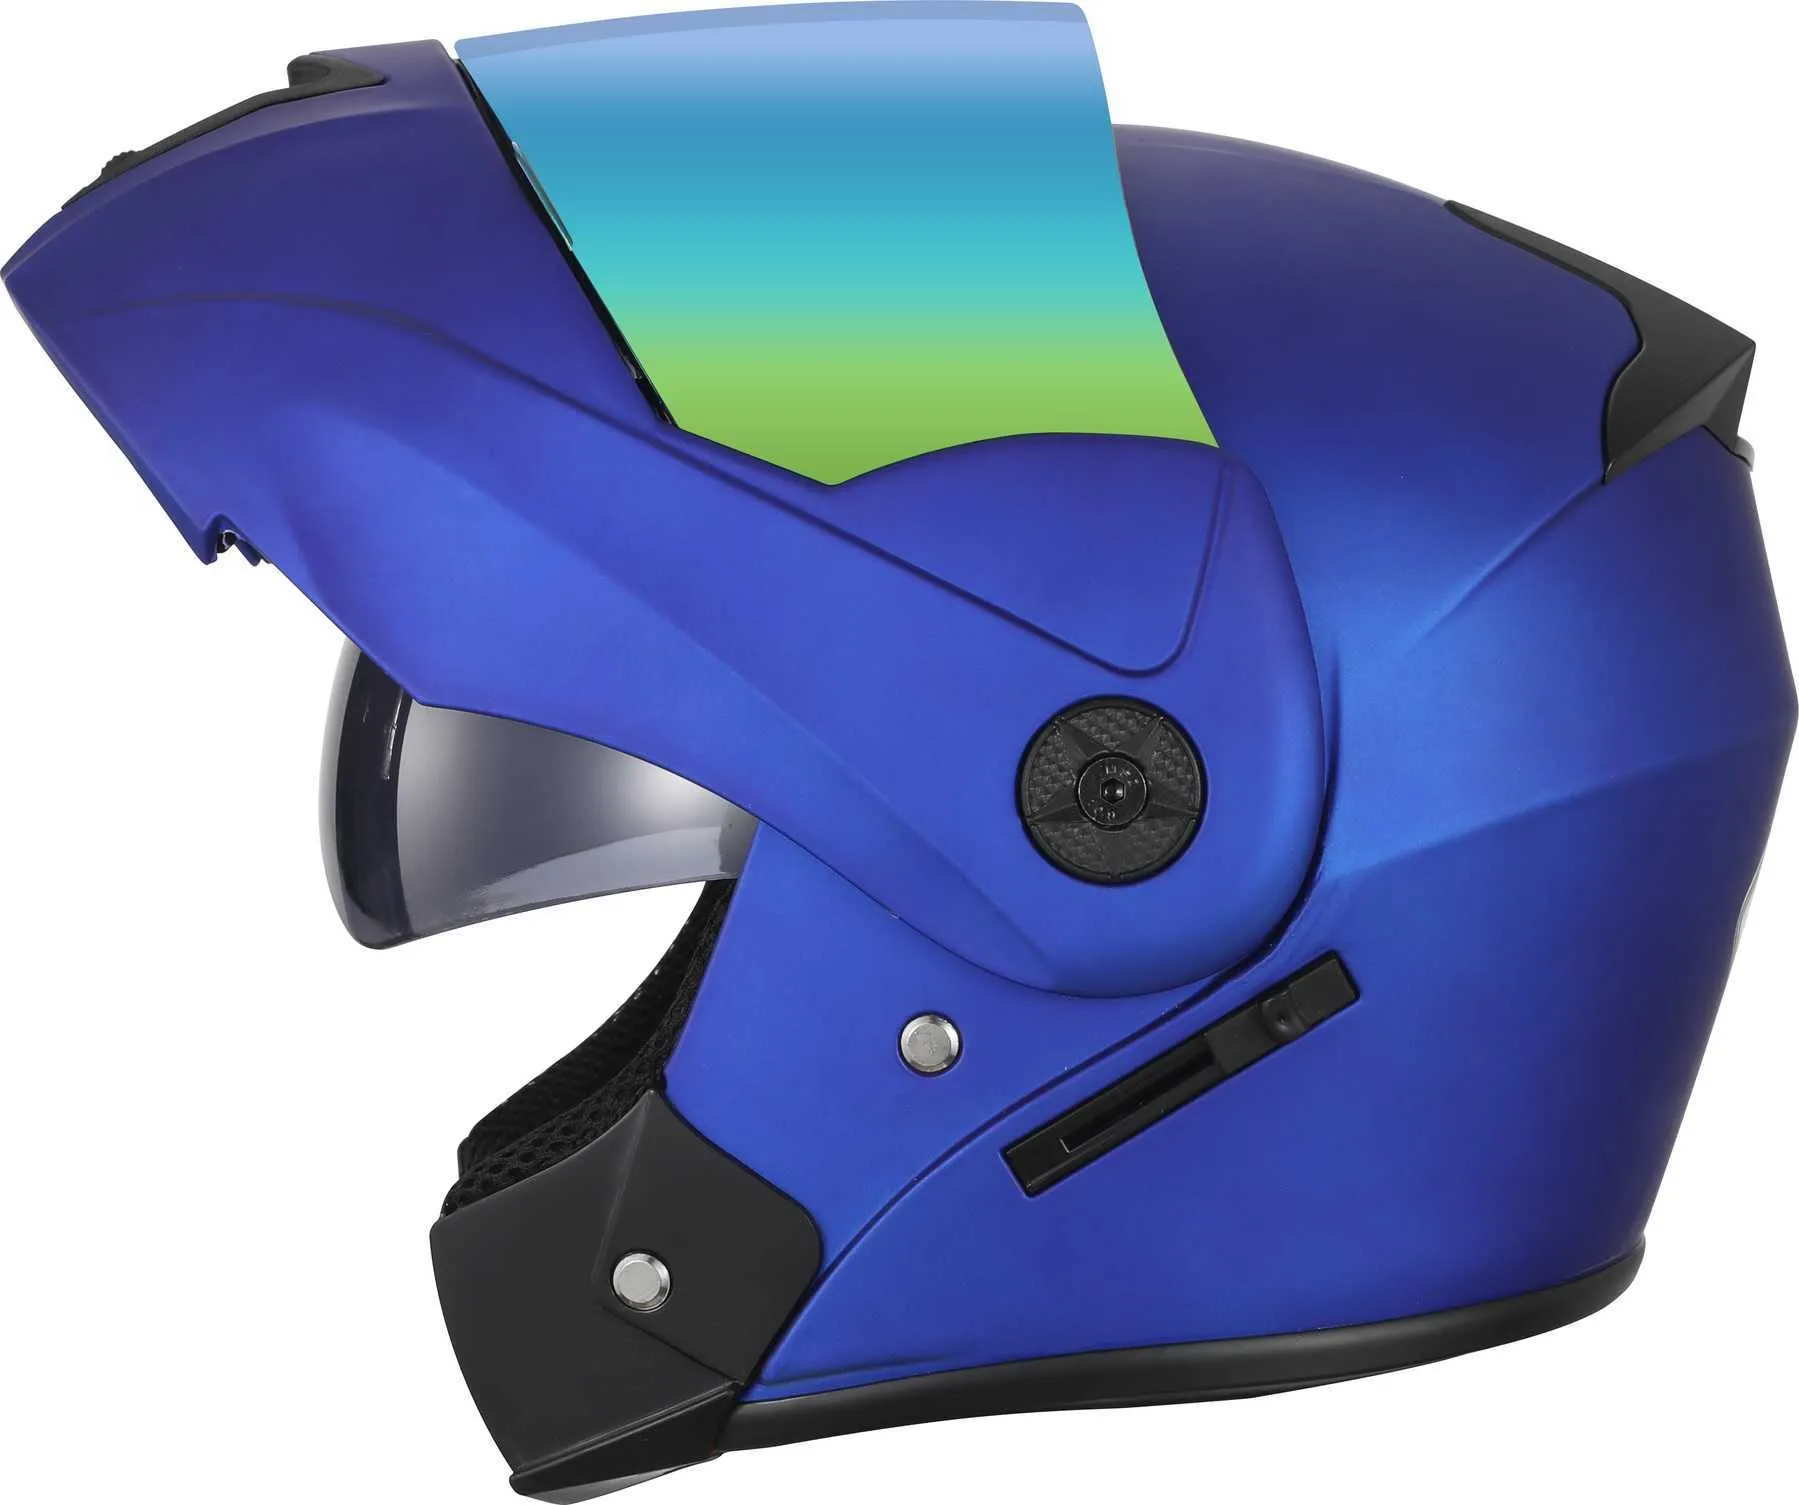 성인을위한 새로운 플립 업 오토바이 헬멧 모듈 식 듀얼 렌즈 바이저 전체 얼굴 오토바이 헬멧 안전 모토 크로스 헬멧 Casco Moto Q06273d